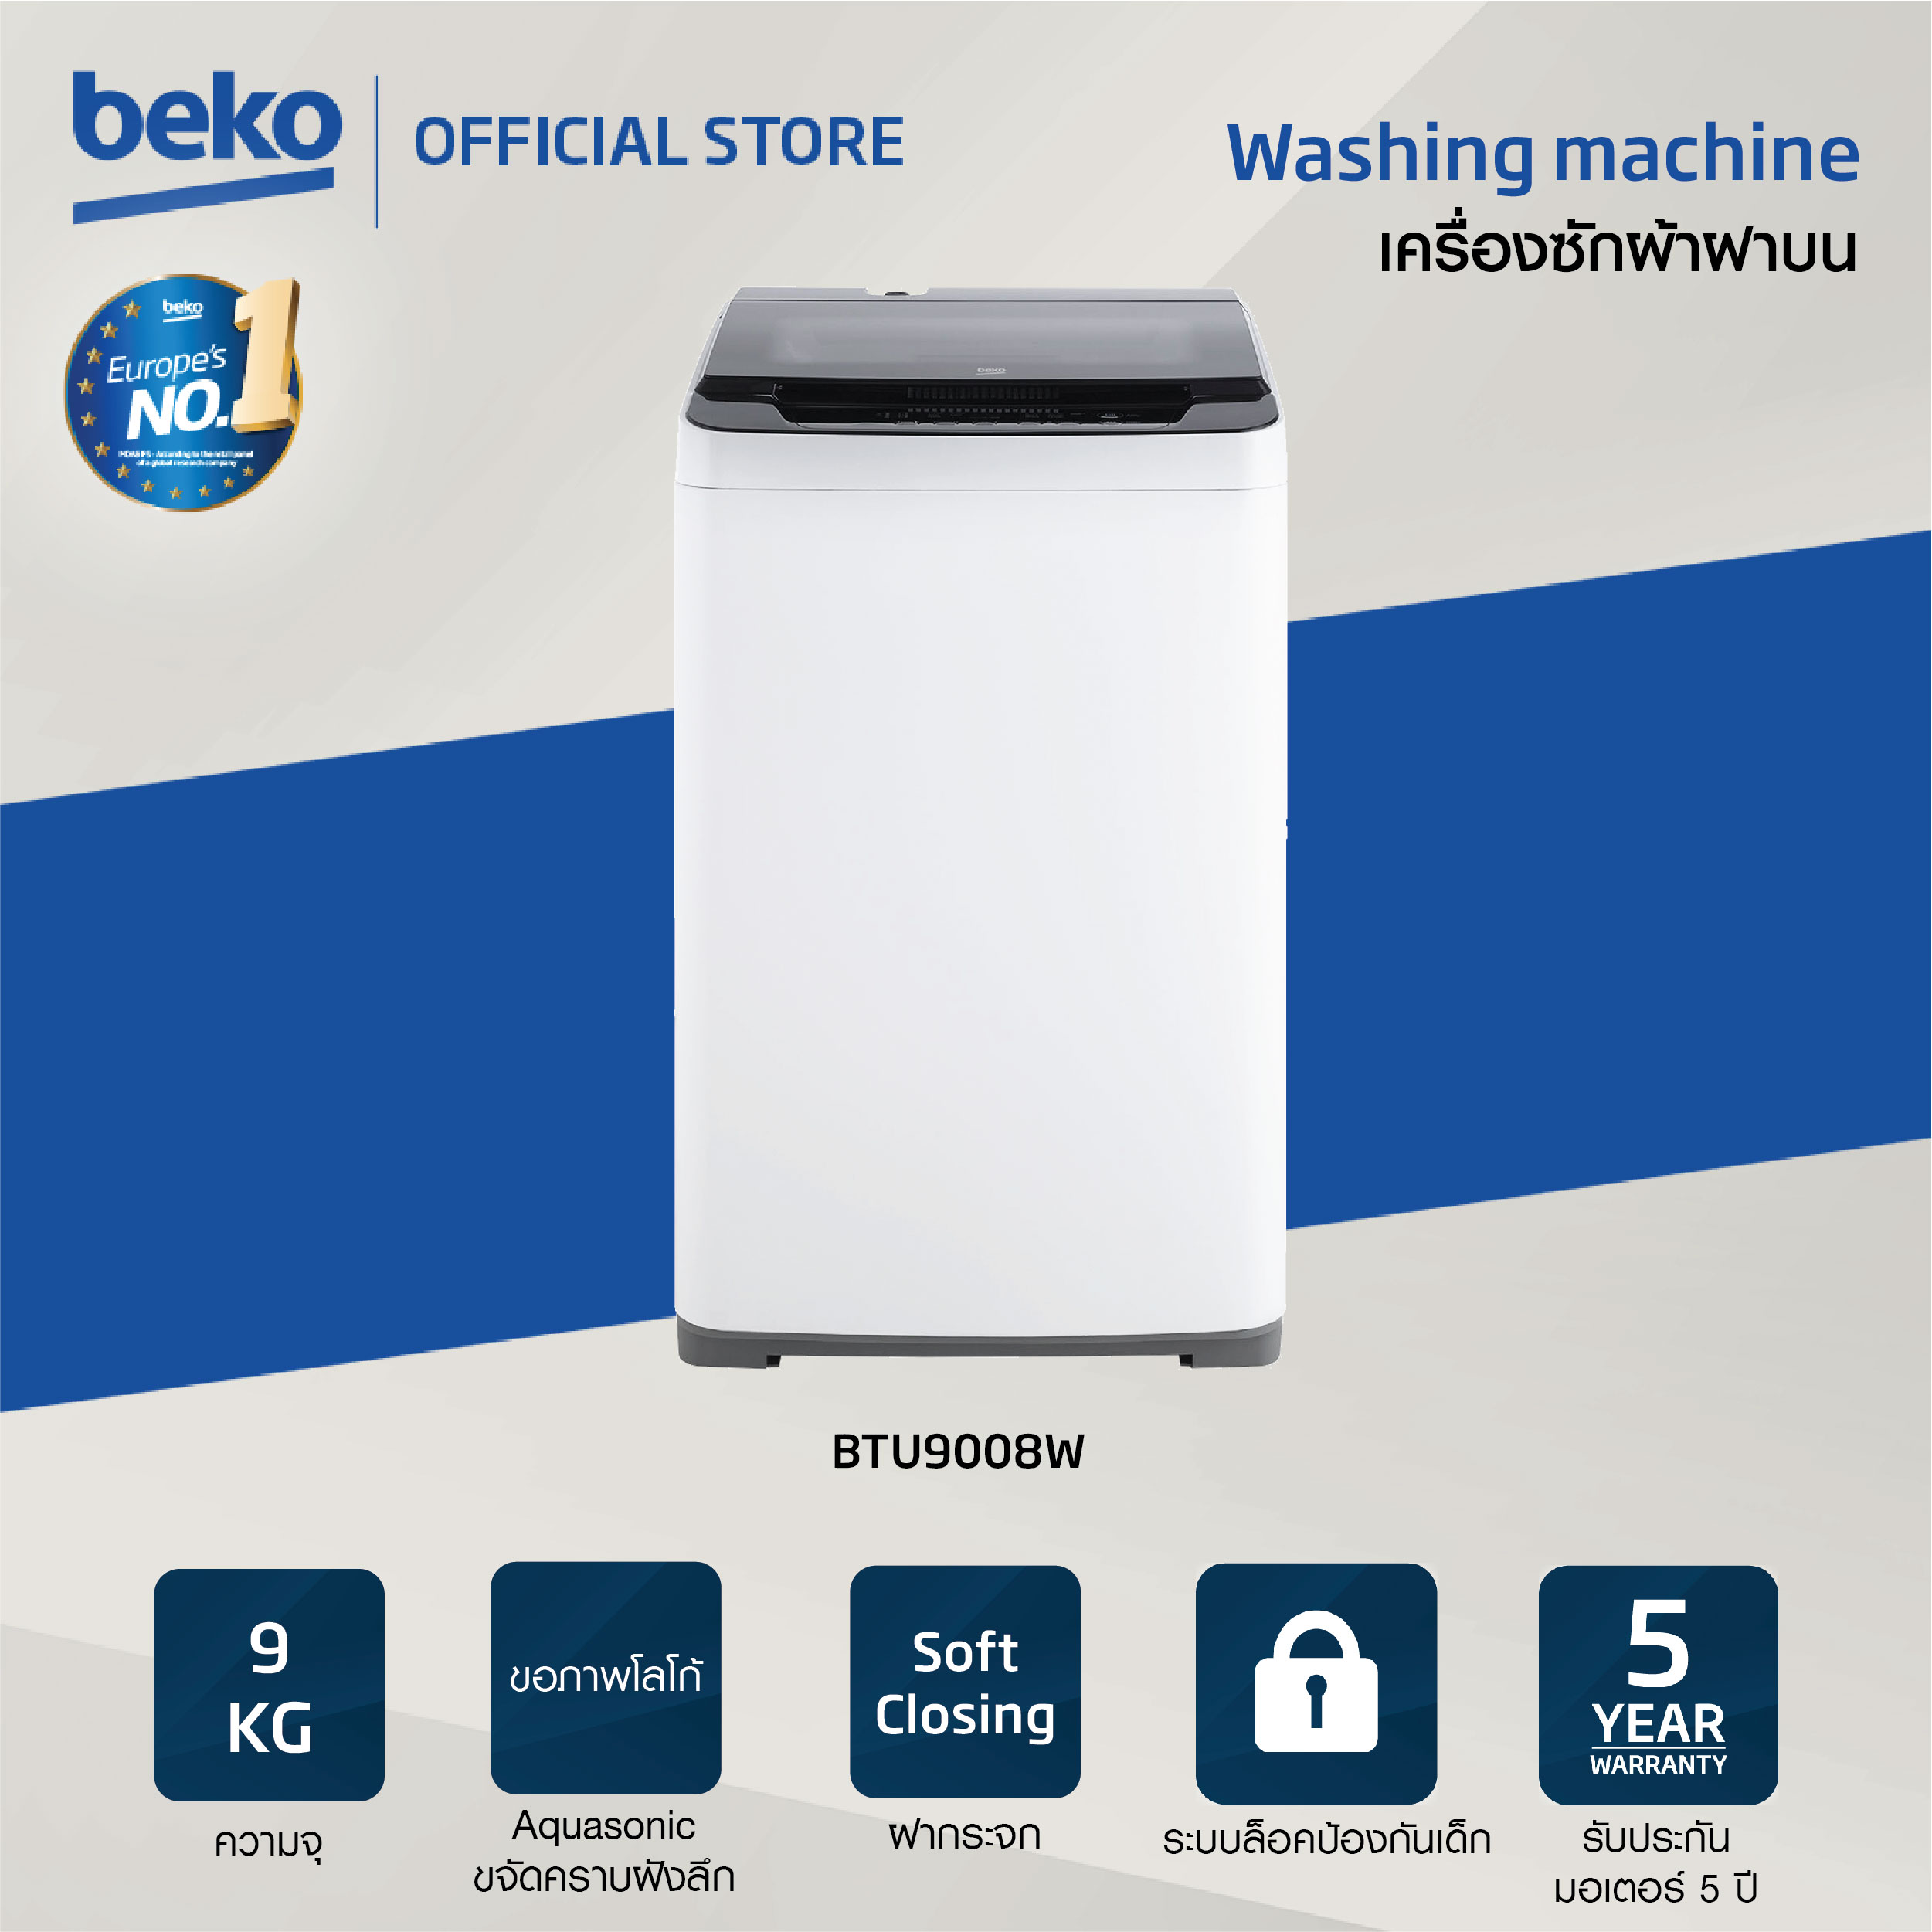 Beko เครื่องซักผ้าฝาบน 9 กก. รุ่น BTU9008W รอบปั่น 700 รอบ โปรแกรมการซัก 6 โปรแกรม รับประกันมอเตอร์ 5 ปี